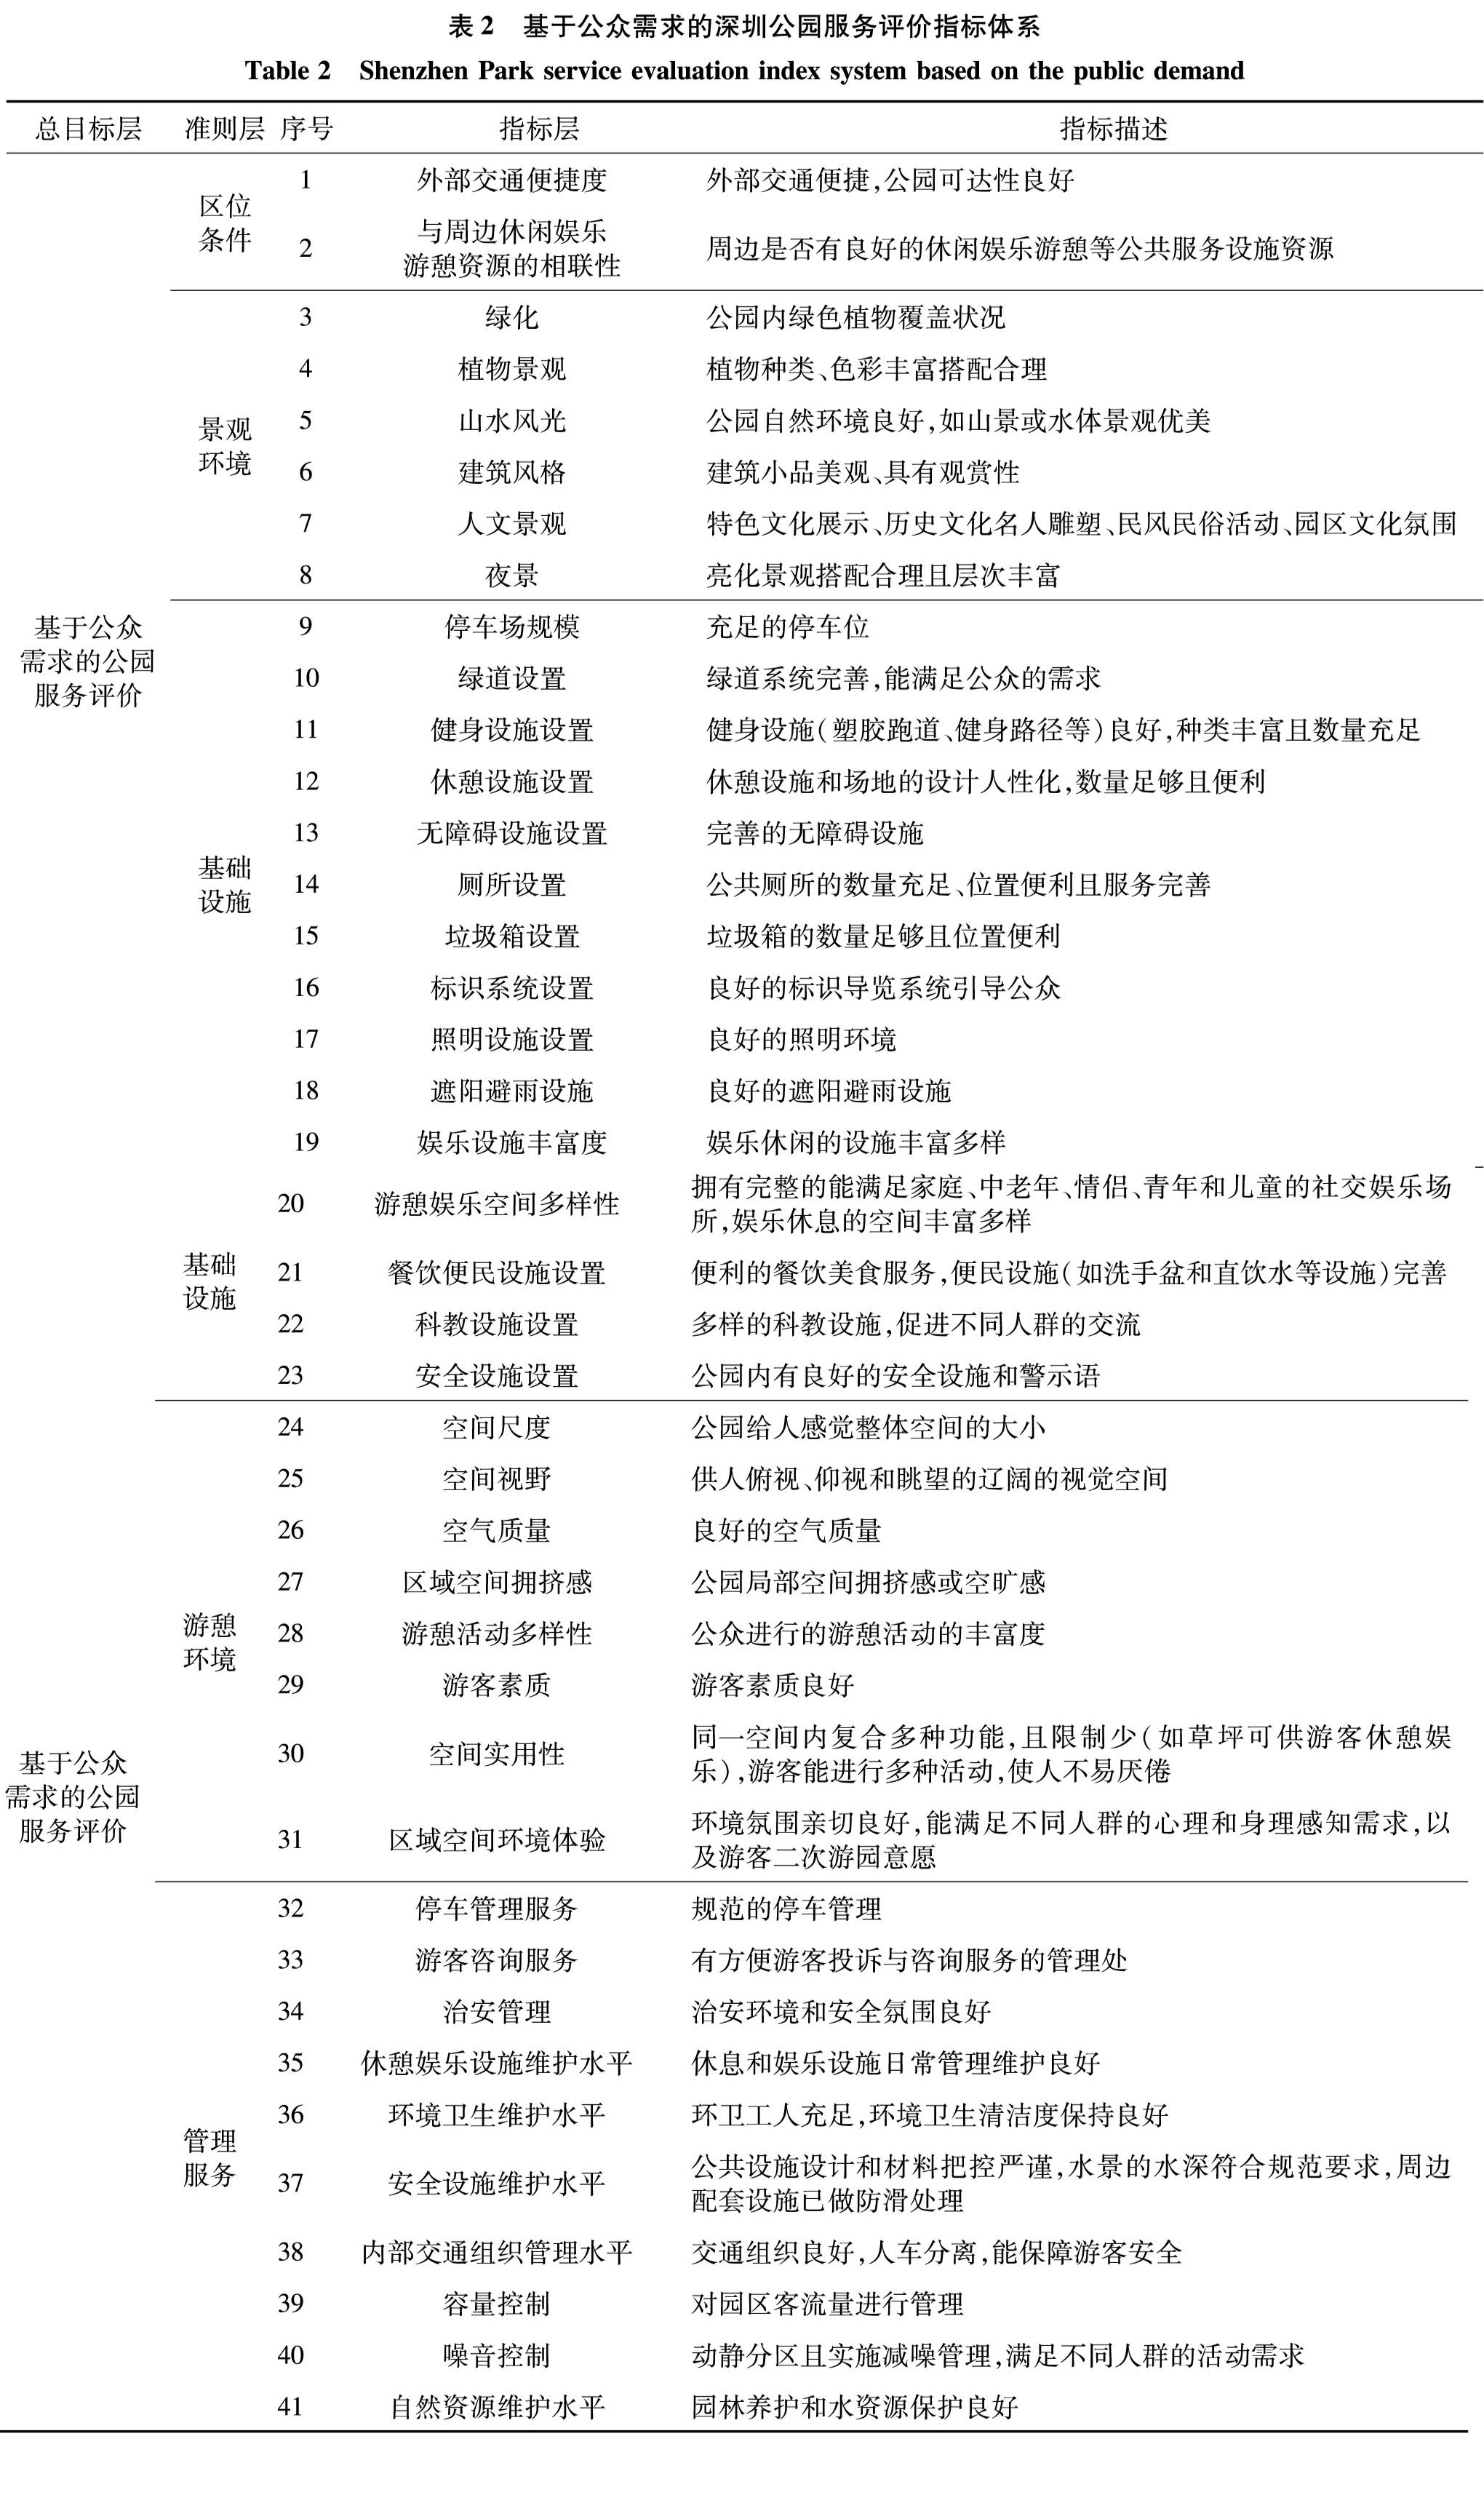 表2 基于公众需求的深圳公园服务评价指标体系<br/>Table 2 Shenzhen Park service evaluation index system based on the public demand